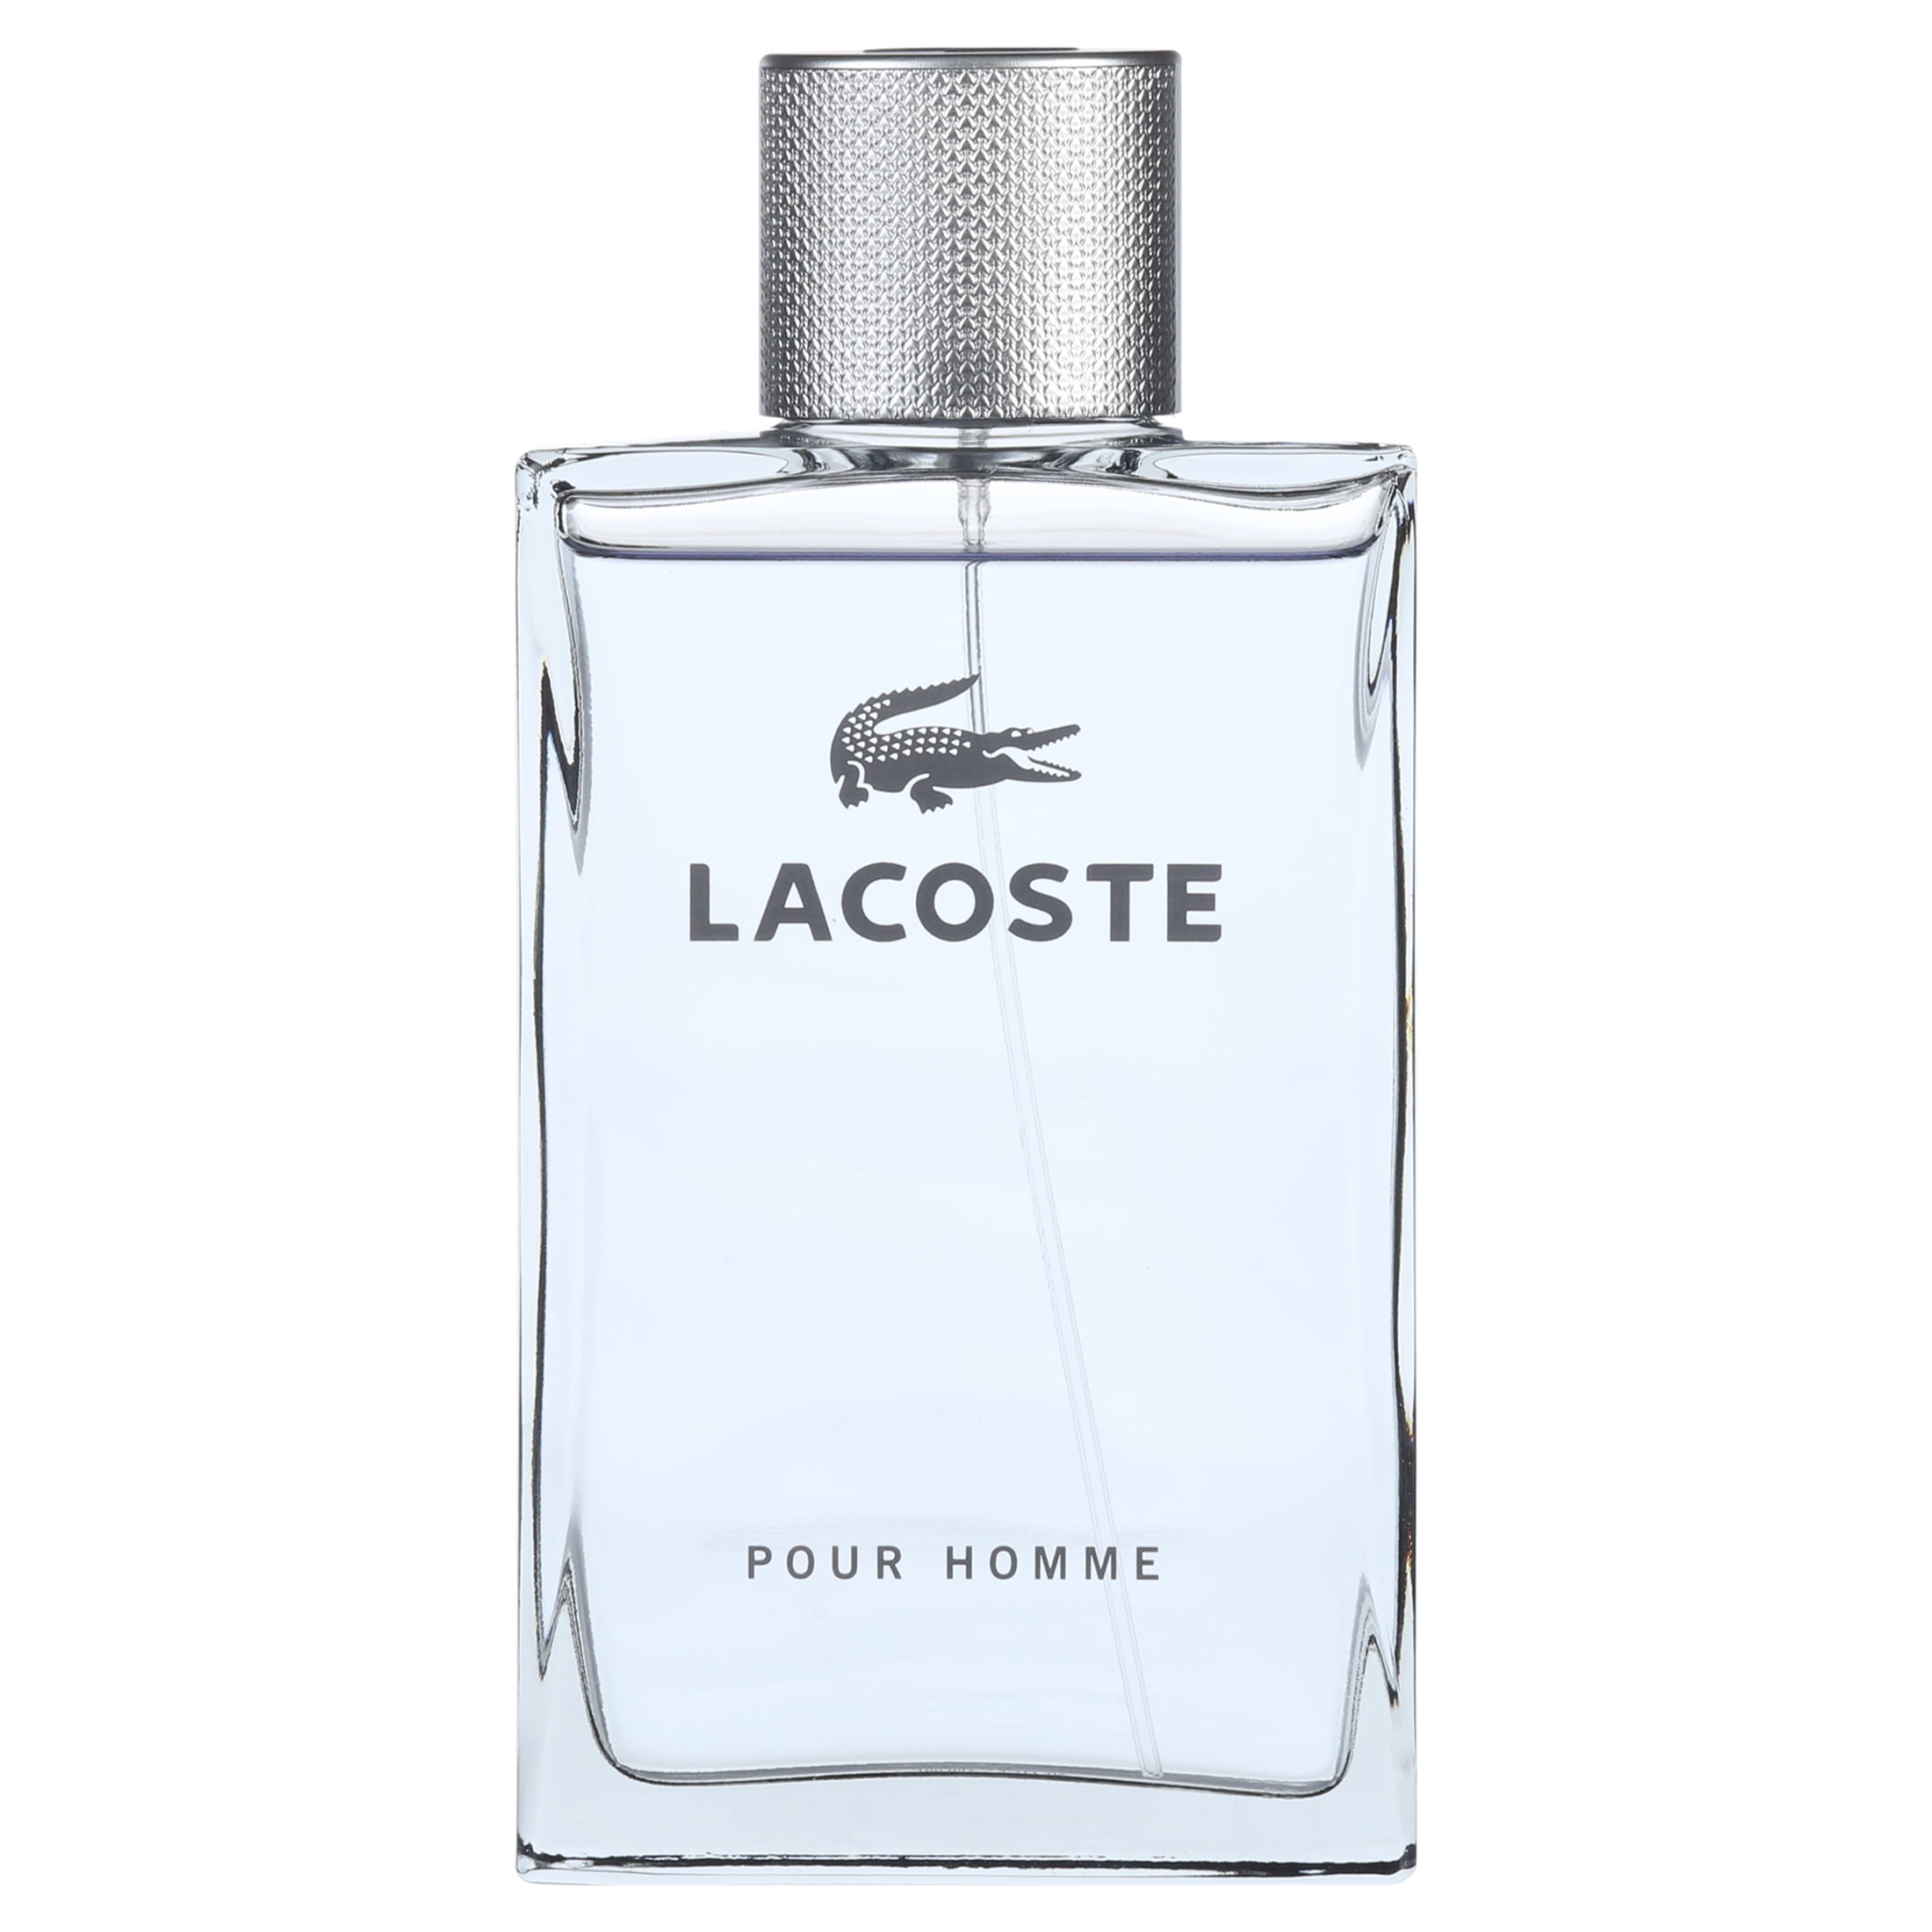 Lacoste Pour Homme Eau De Toilette Spray, for Men, 3.3 oz - Walmart.com